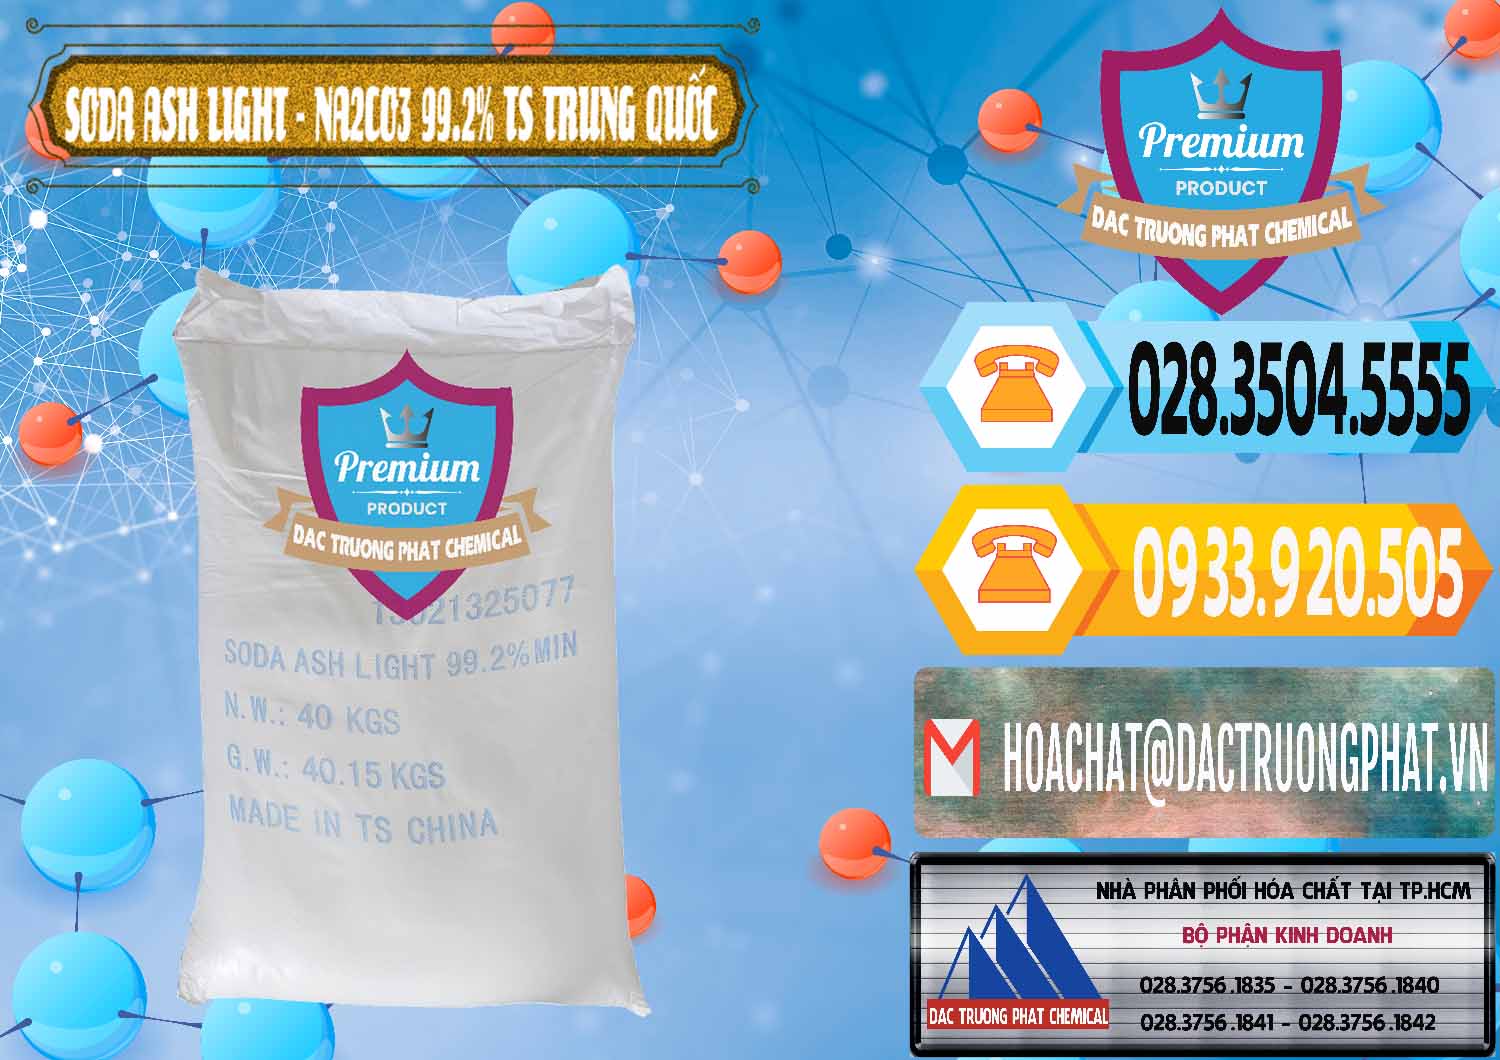 Công ty chuyên bán _ cung ứng Soda Ash Light - NA2CO3 TS Trung Quốc China - 0221 - Cty phân phối & nhập khẩu hóa chất tại TP.HCM - hoachattayrua.net